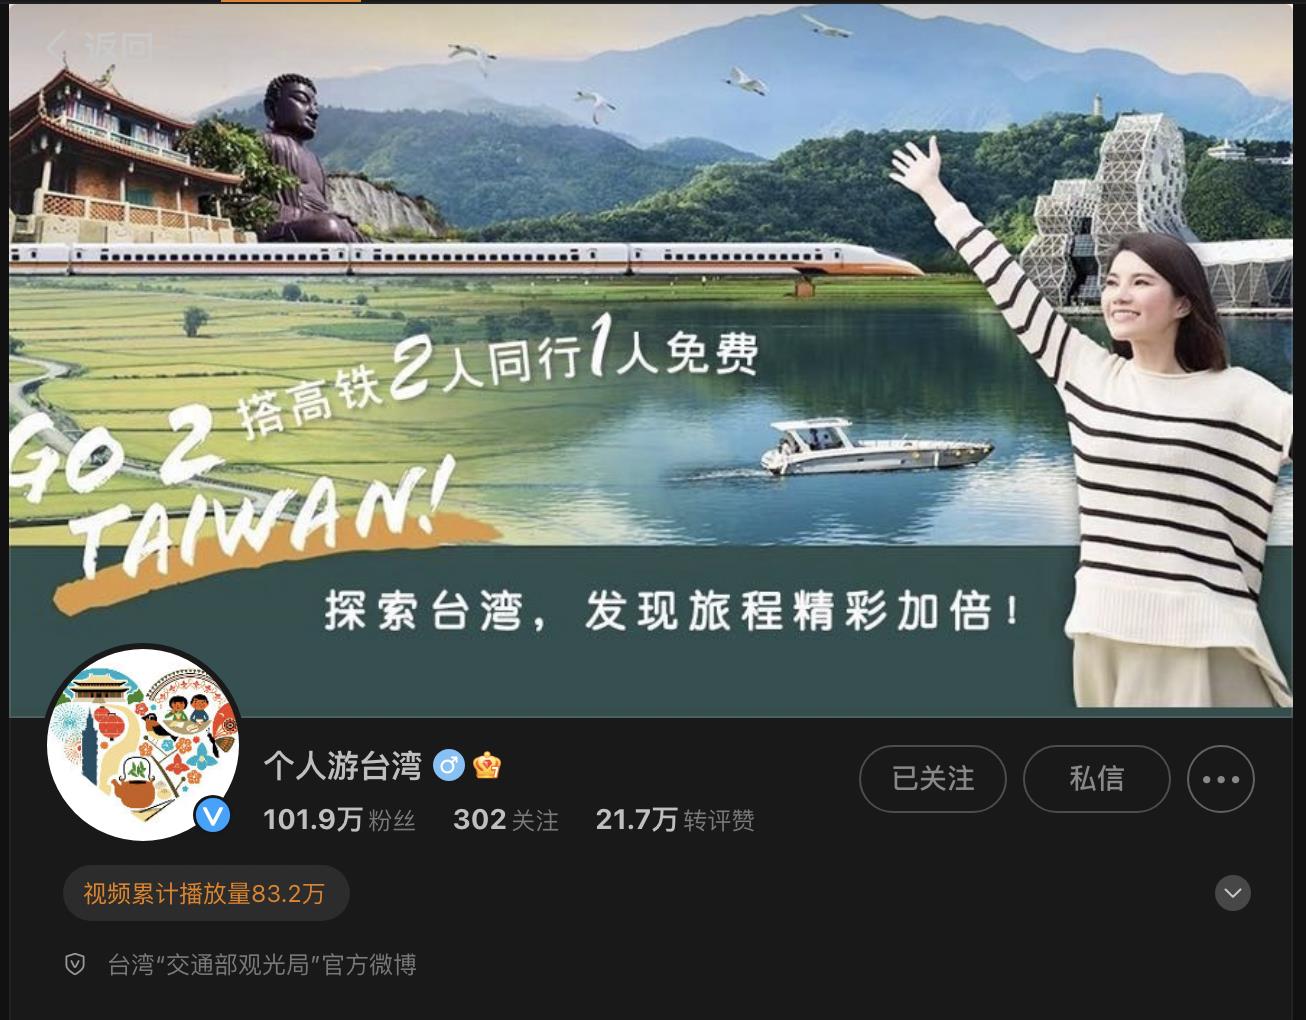 交通部观光署经营微博和微信帐号推广台湾观光。（图／取自微博）